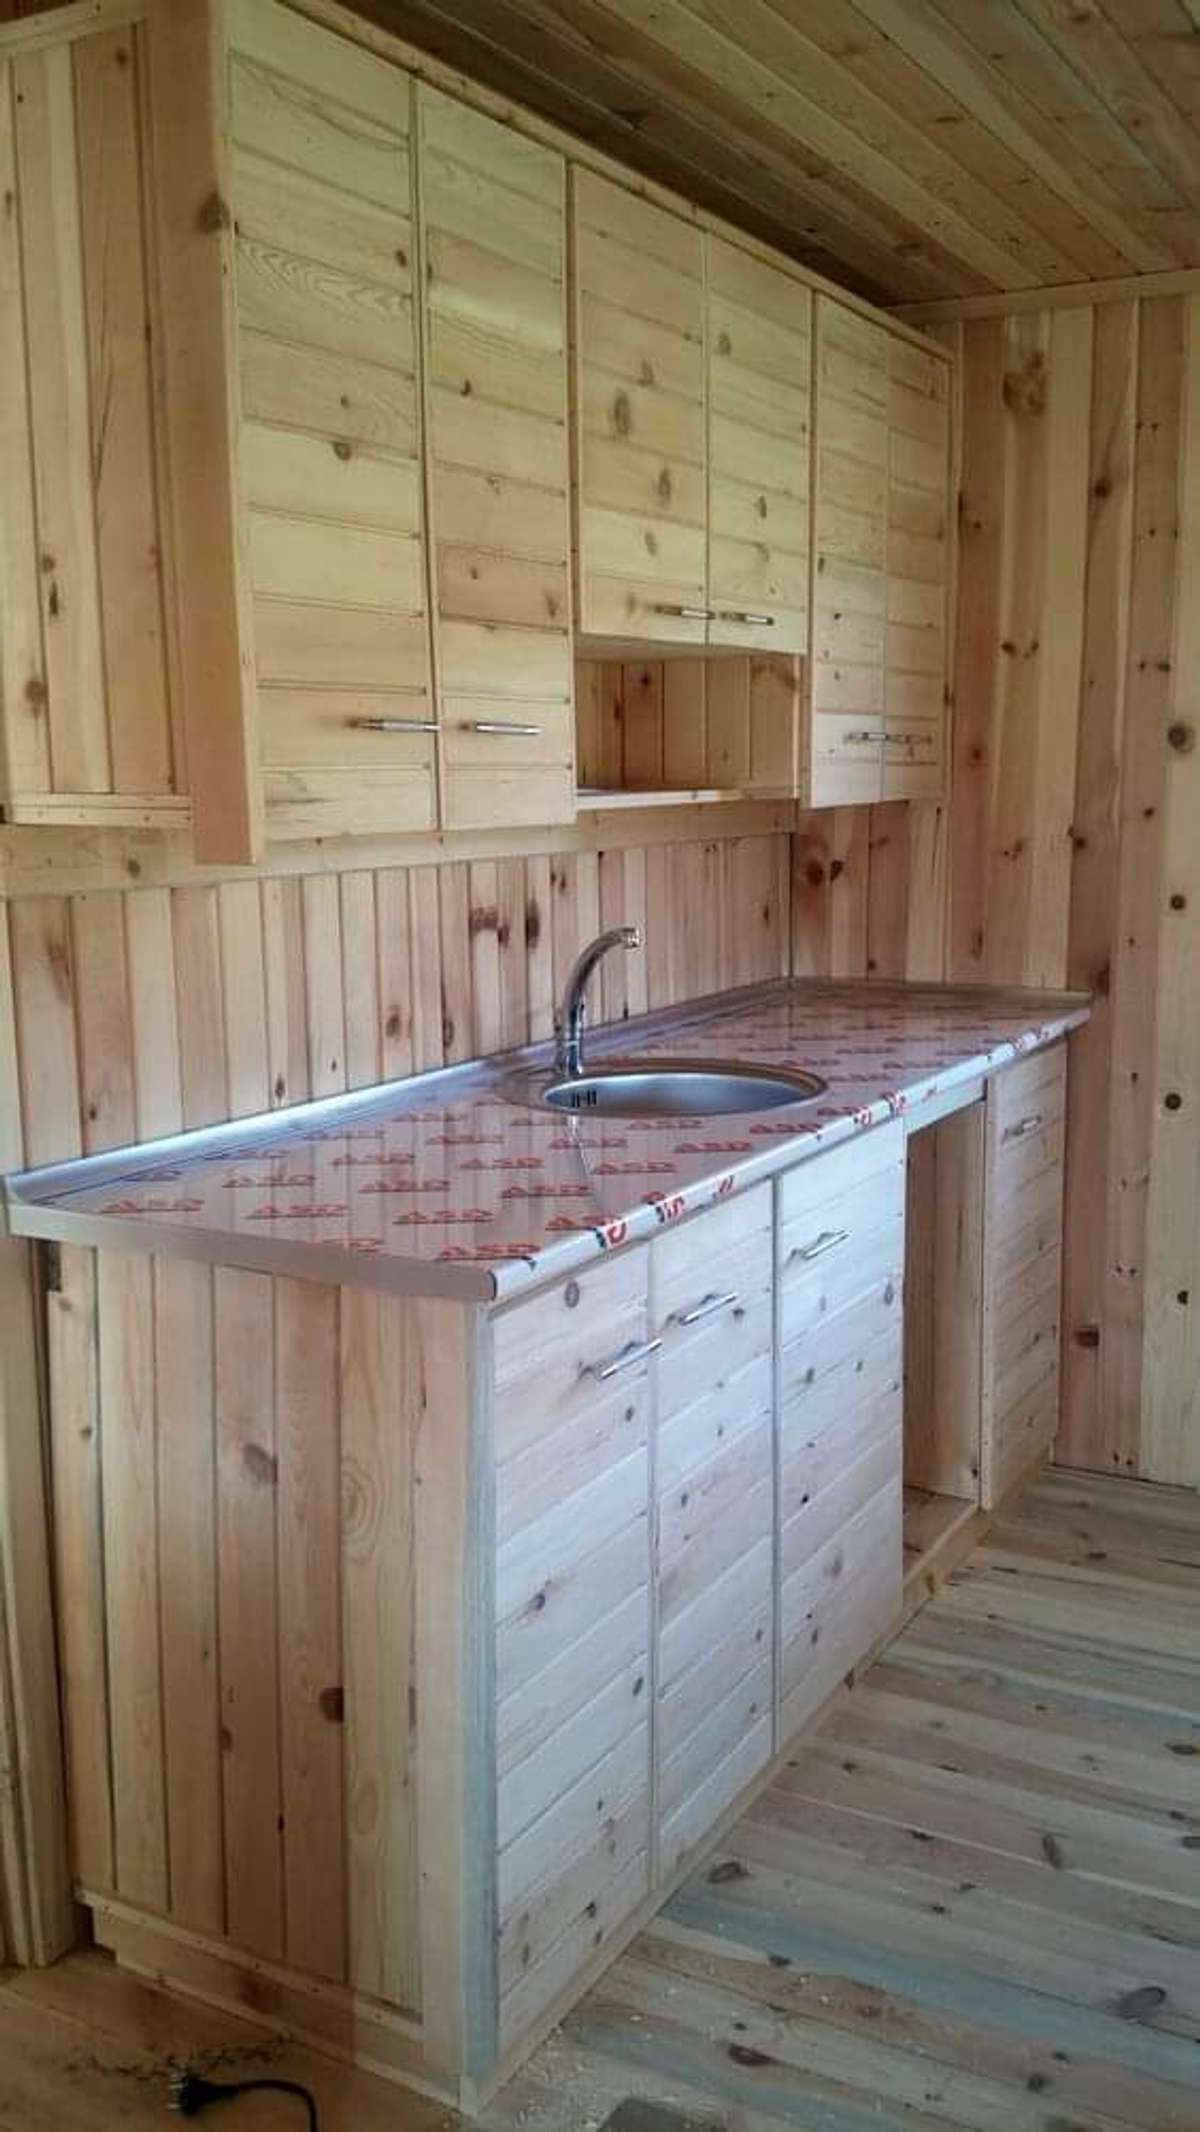 #KitchenCabinet
Wooden Kitchen